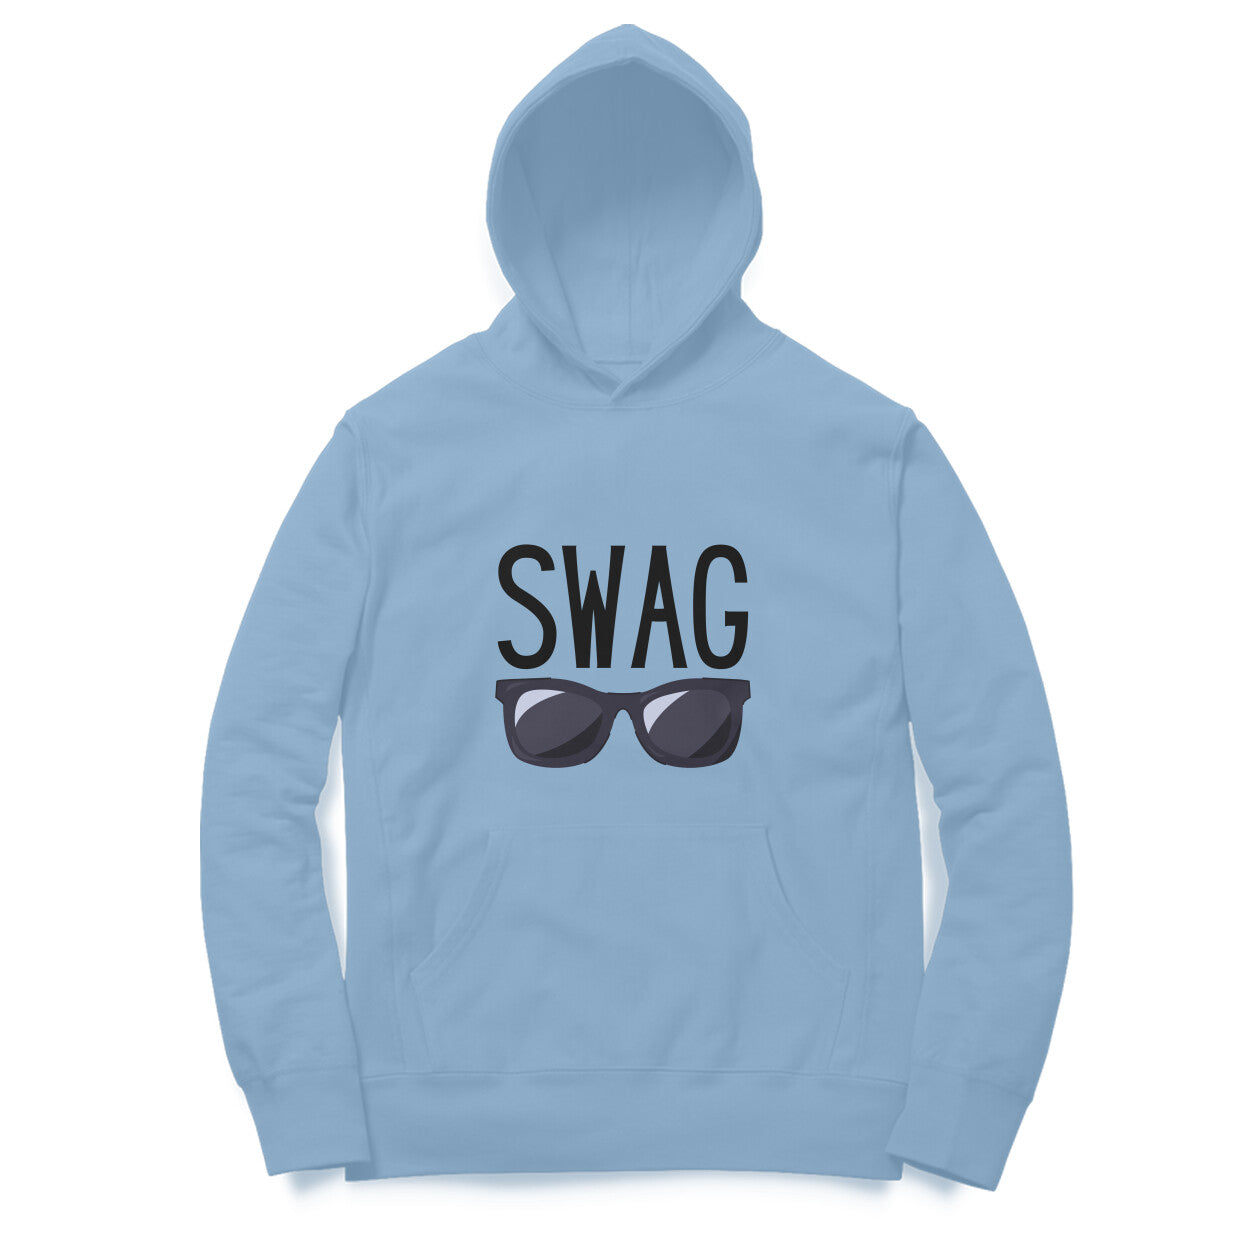 Swag' hoodie